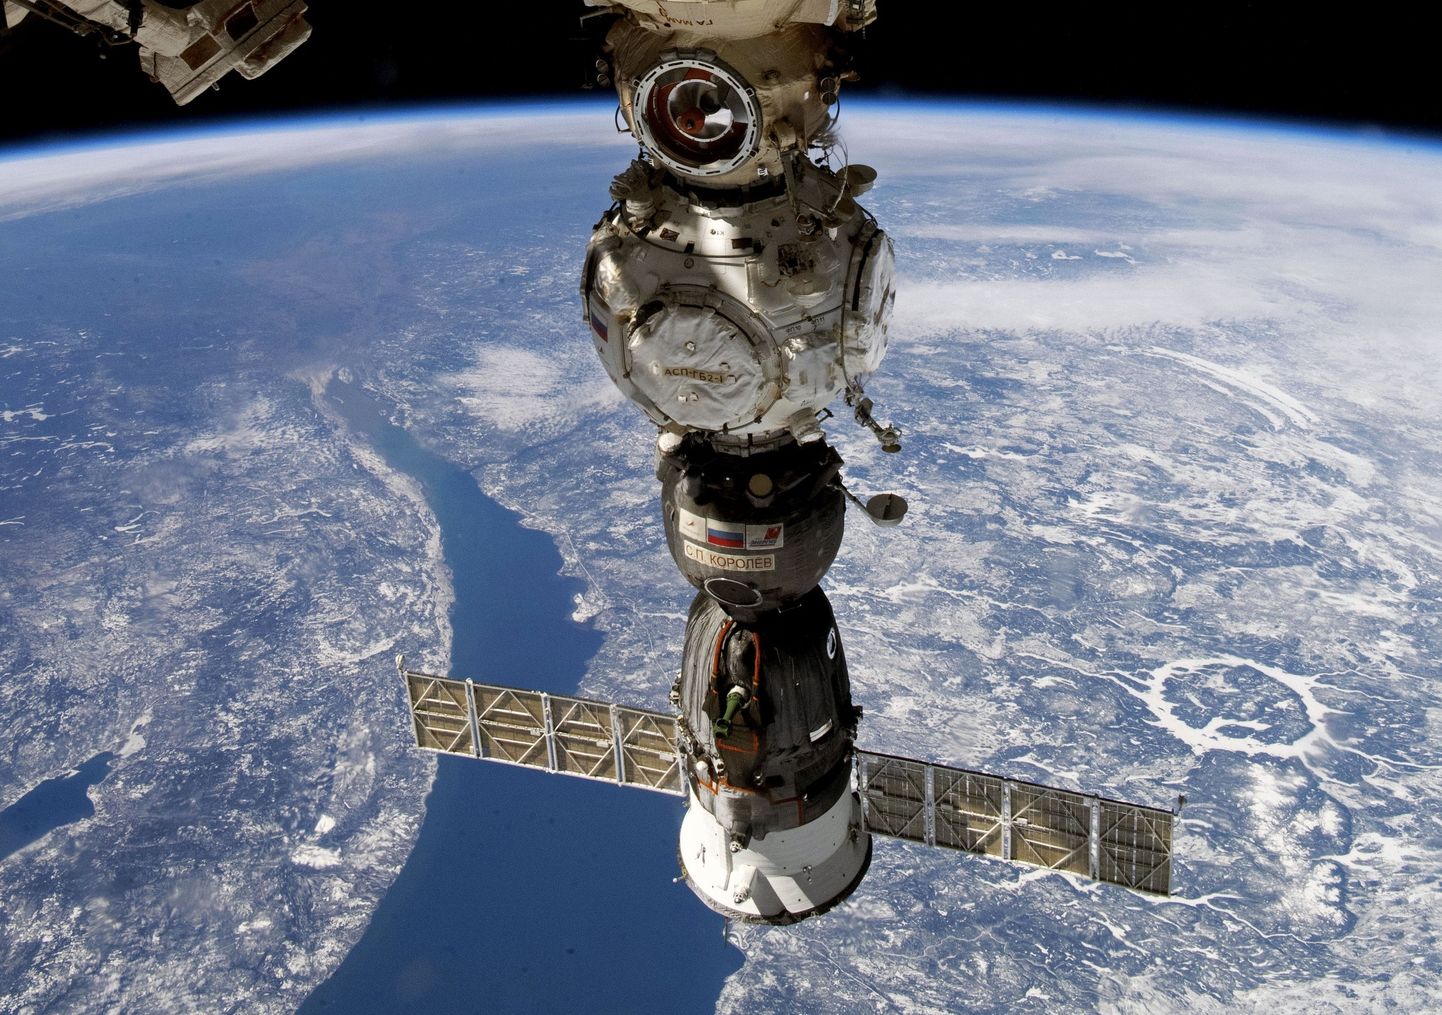 Rahvusvahelisest Kosmosejaama (ISS) Vene laskumiskapsel Sojuz MS-22, mis mullu detsembris väikse kosmosekiviga pihta sai ja sellest hakkas jahutusvedelikku lekkima. Kapsel toodi seejärel tänavu märtsis mehitamata tagasi Maale.